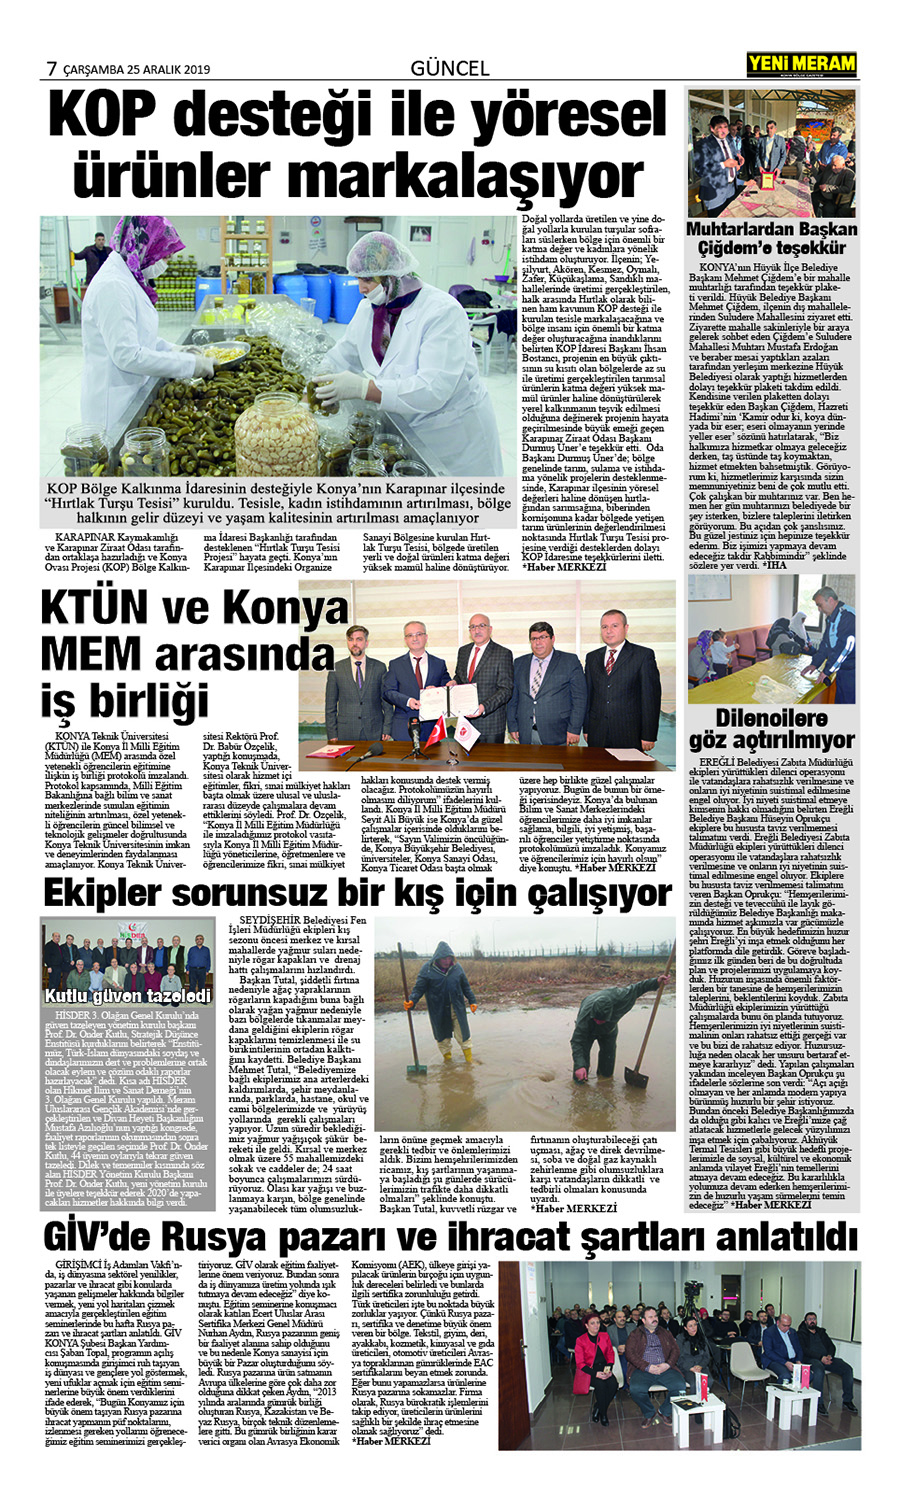 25 Aralık 2019 Yeni Meram Gazetesi